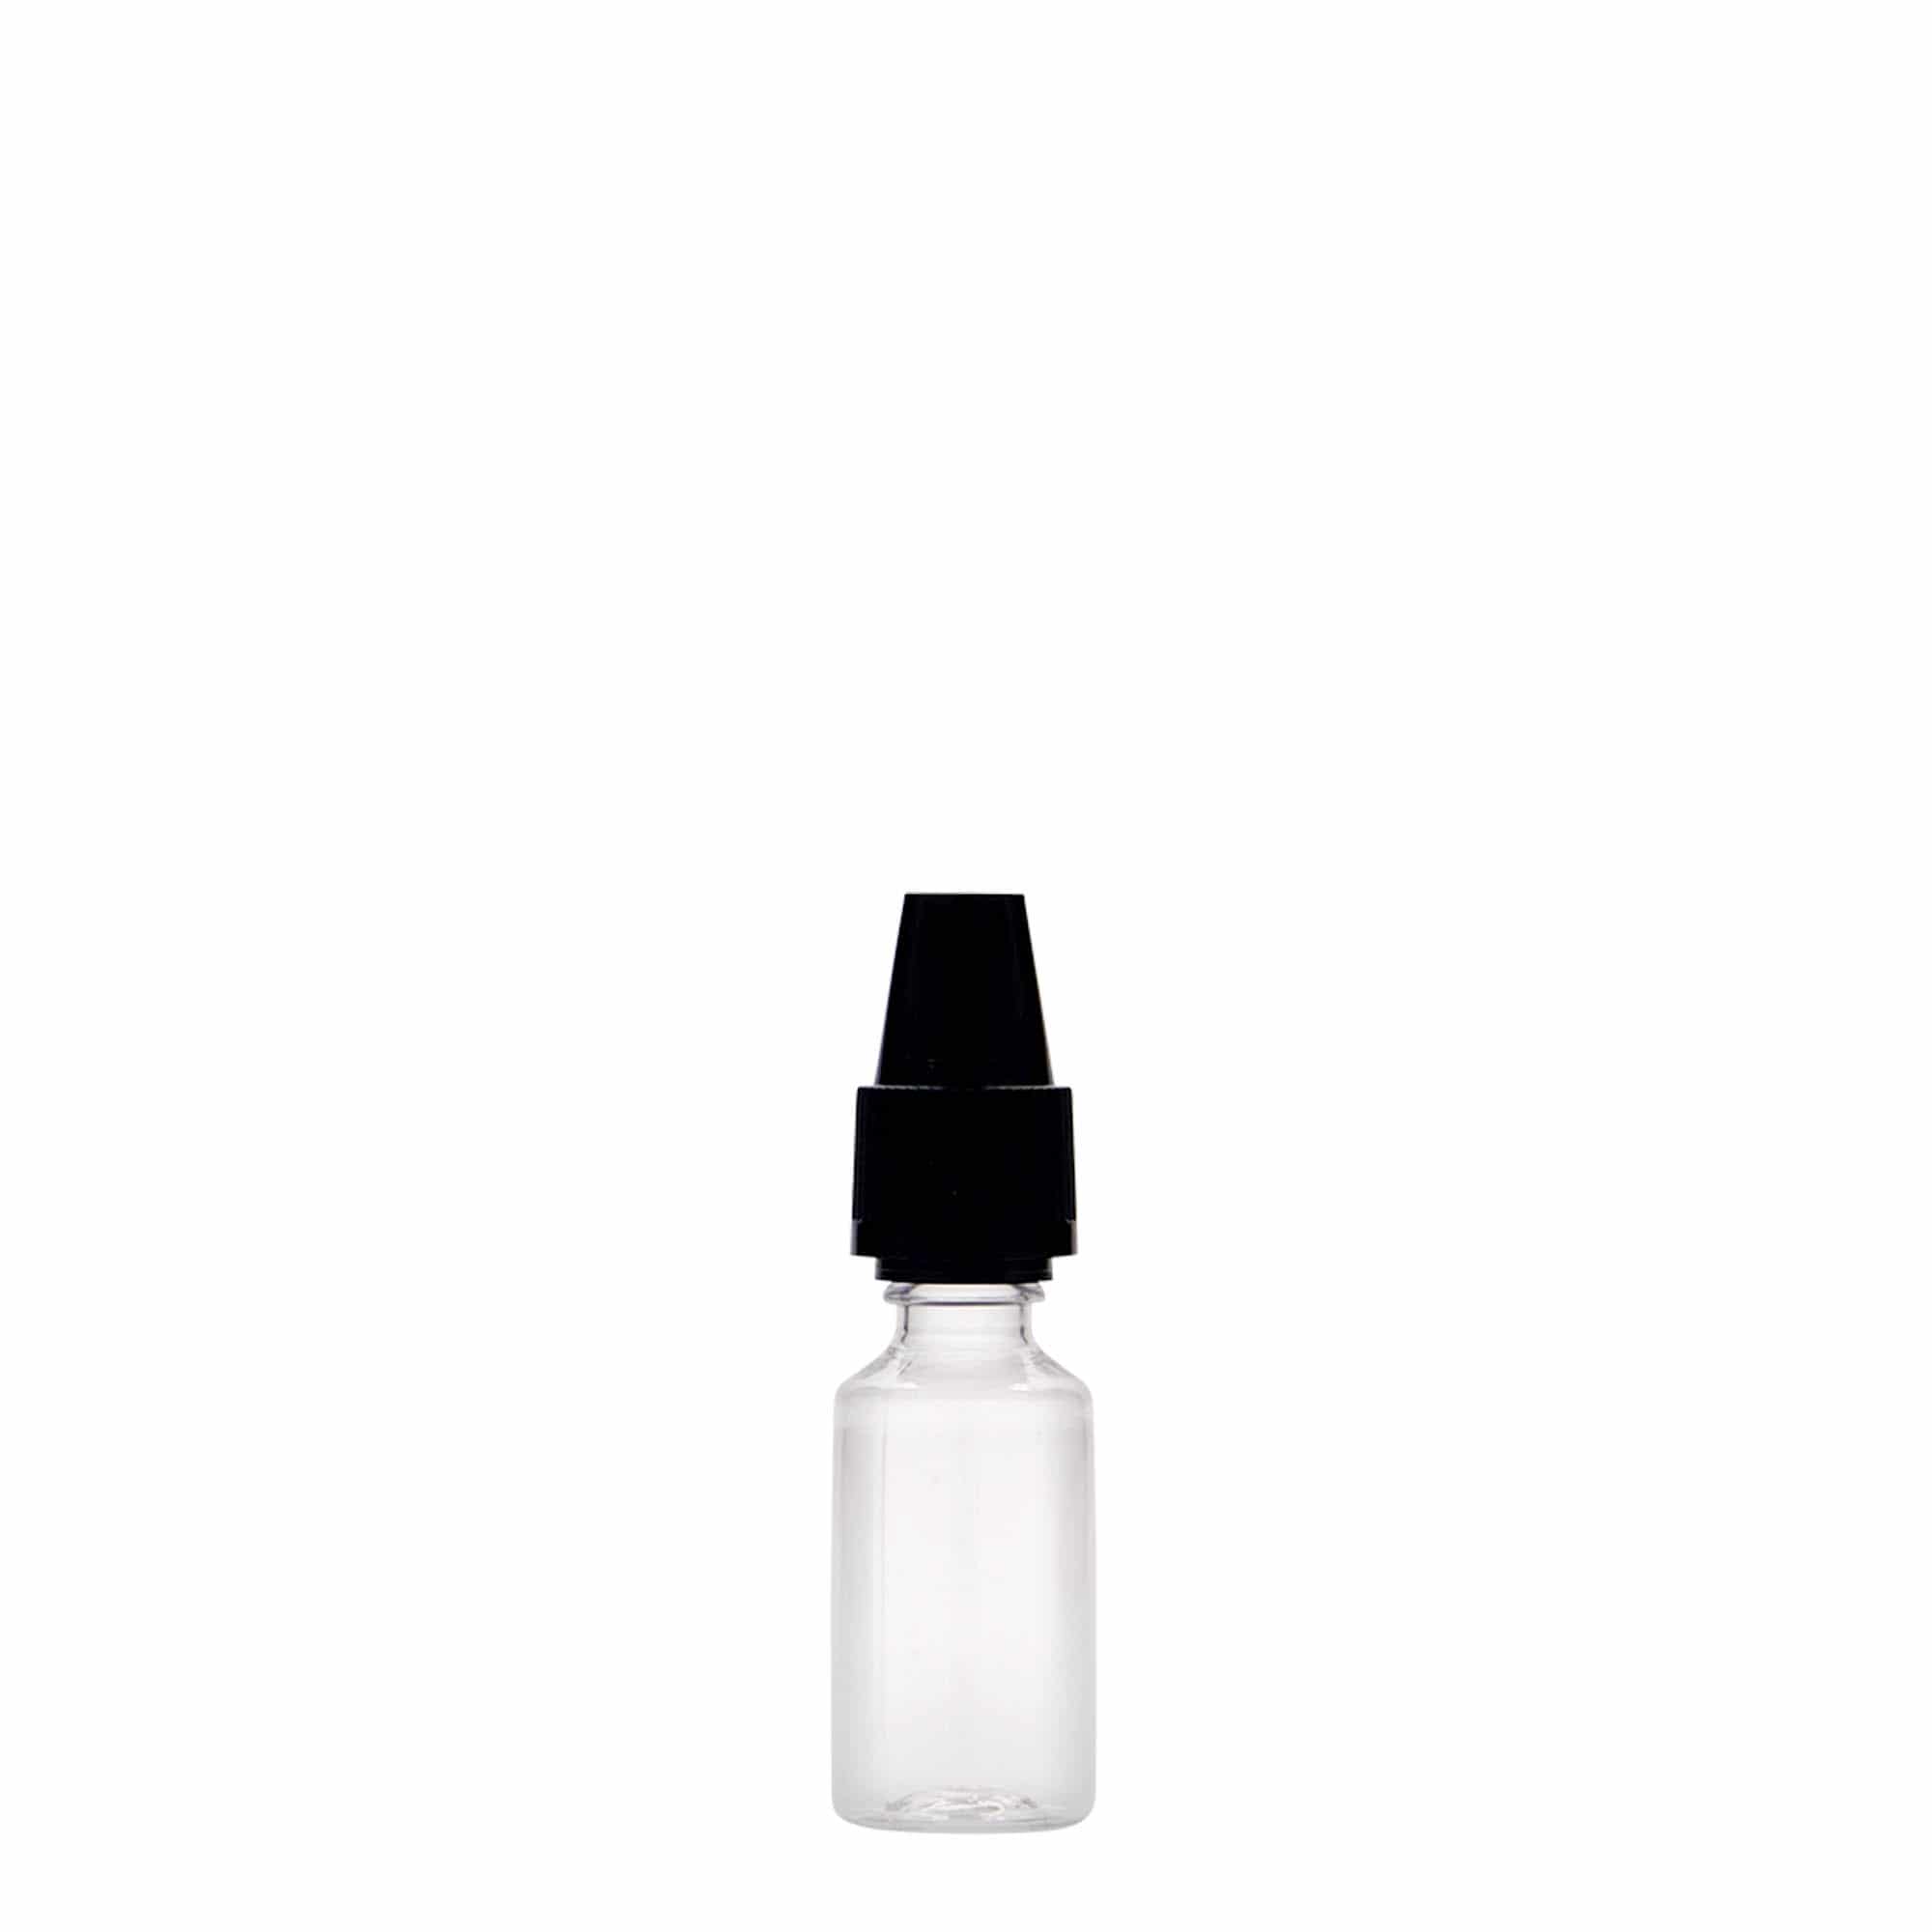 Botella de PET 'E-Liquid' de 10 ml con garantía de calidad y seguro a prueba de niños, plástico, boca: tapón de rosca